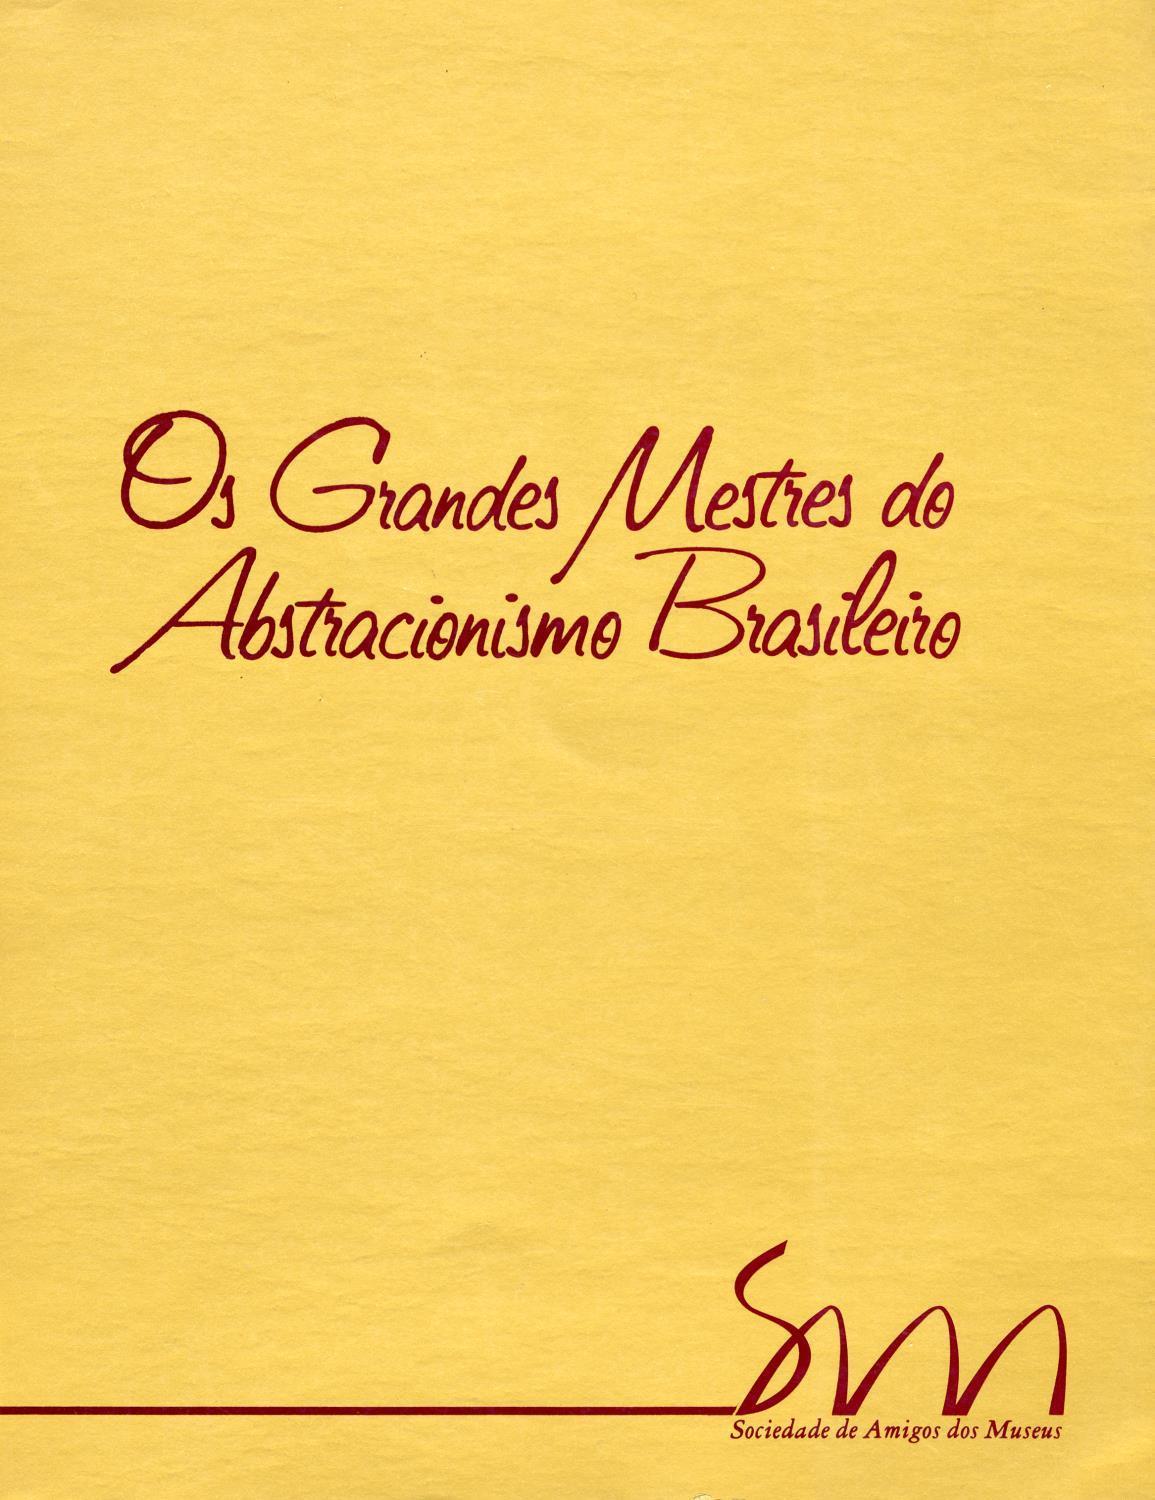 Os Grandes Mestres do Abstracionismo Brasileiro